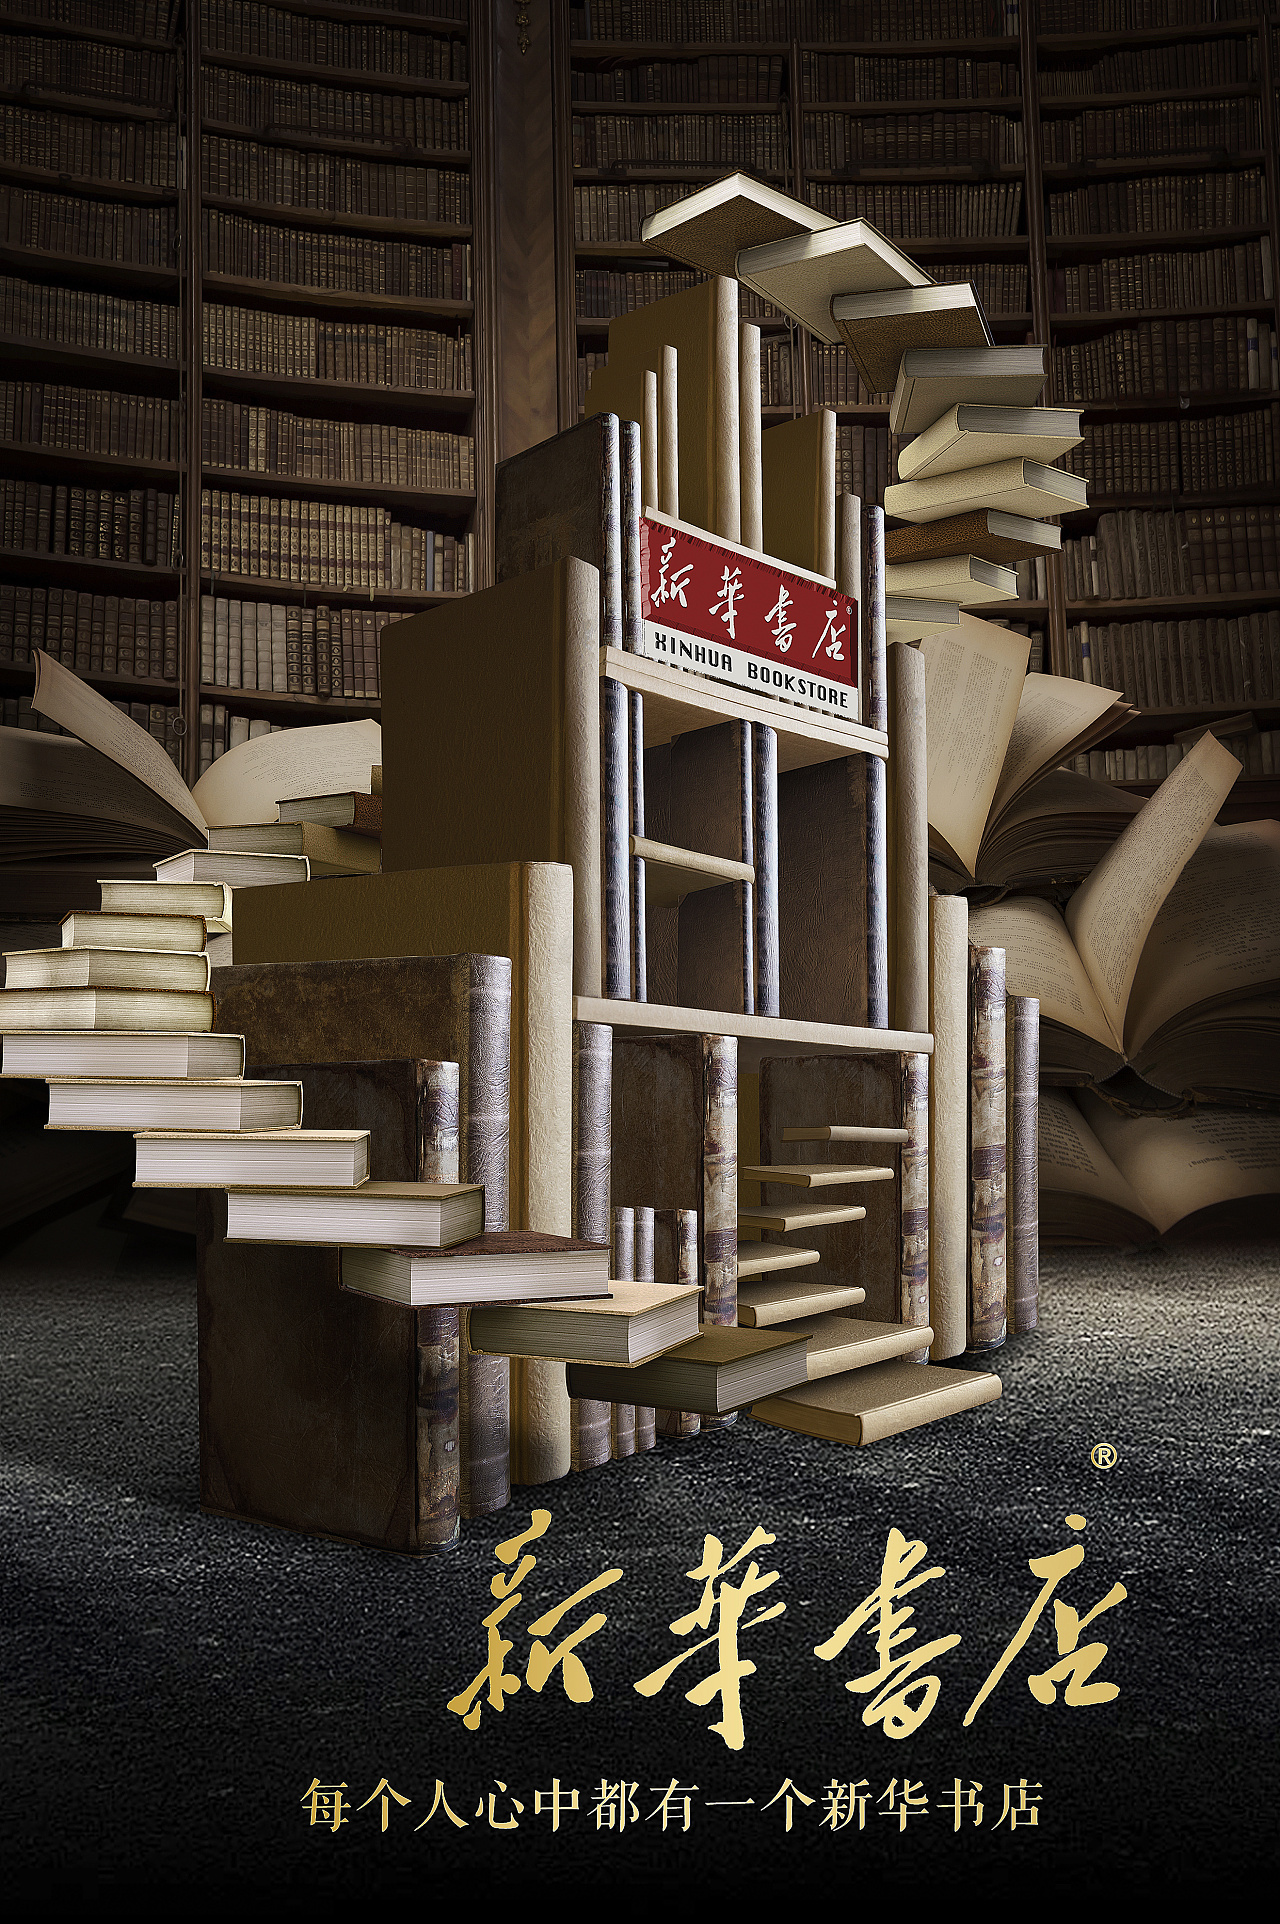 风景售书跳蚤市场小学海报设计目前广告园林设计v风景有哪些 - 设计之家